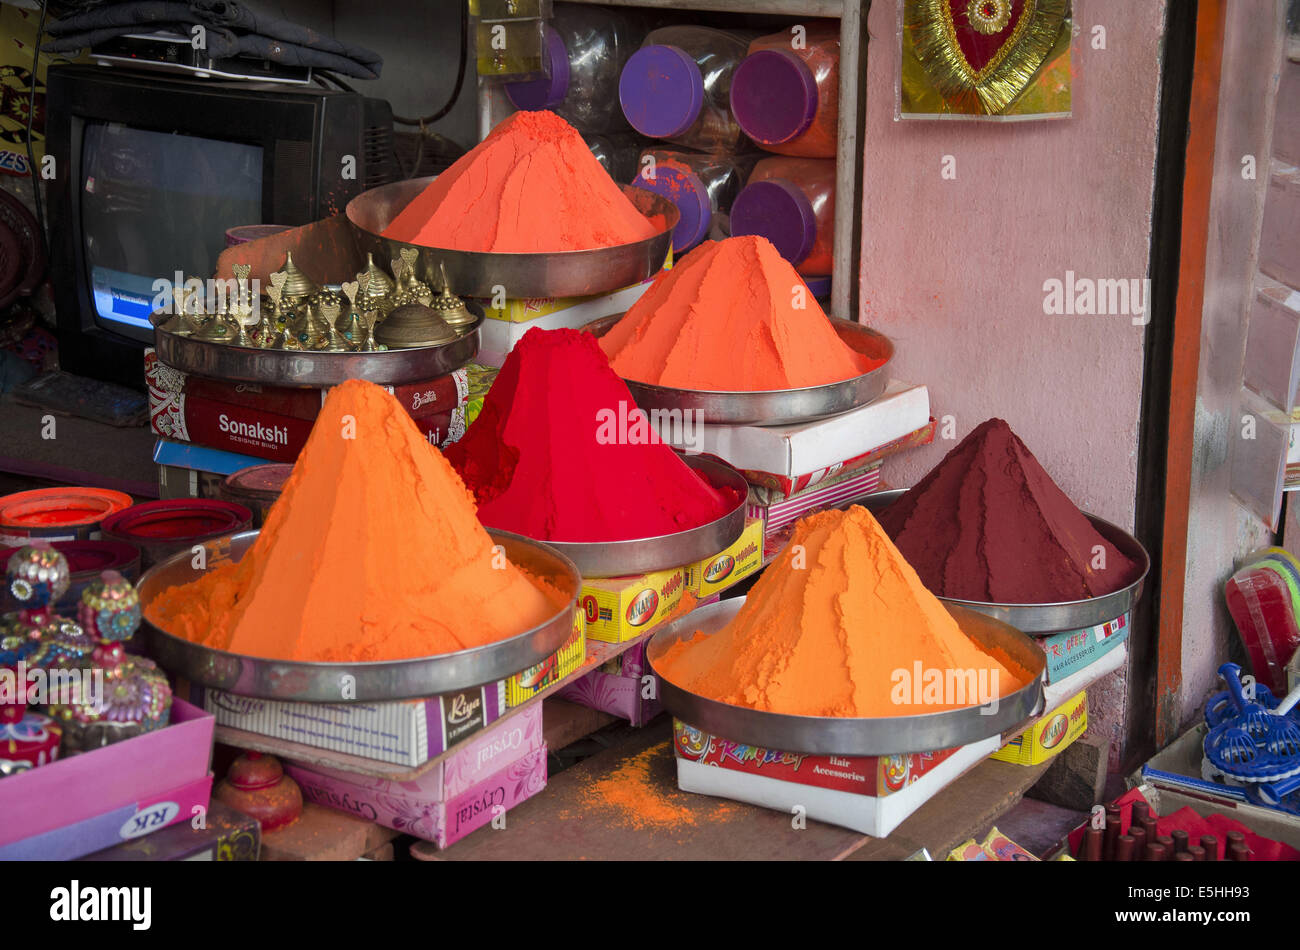 Giallo, Rosso, Arancione, Rosa e marrone per la riproduzione di Holi sul display in un negozio di Allahabad, Uttar Pradesh, India Foto Stock